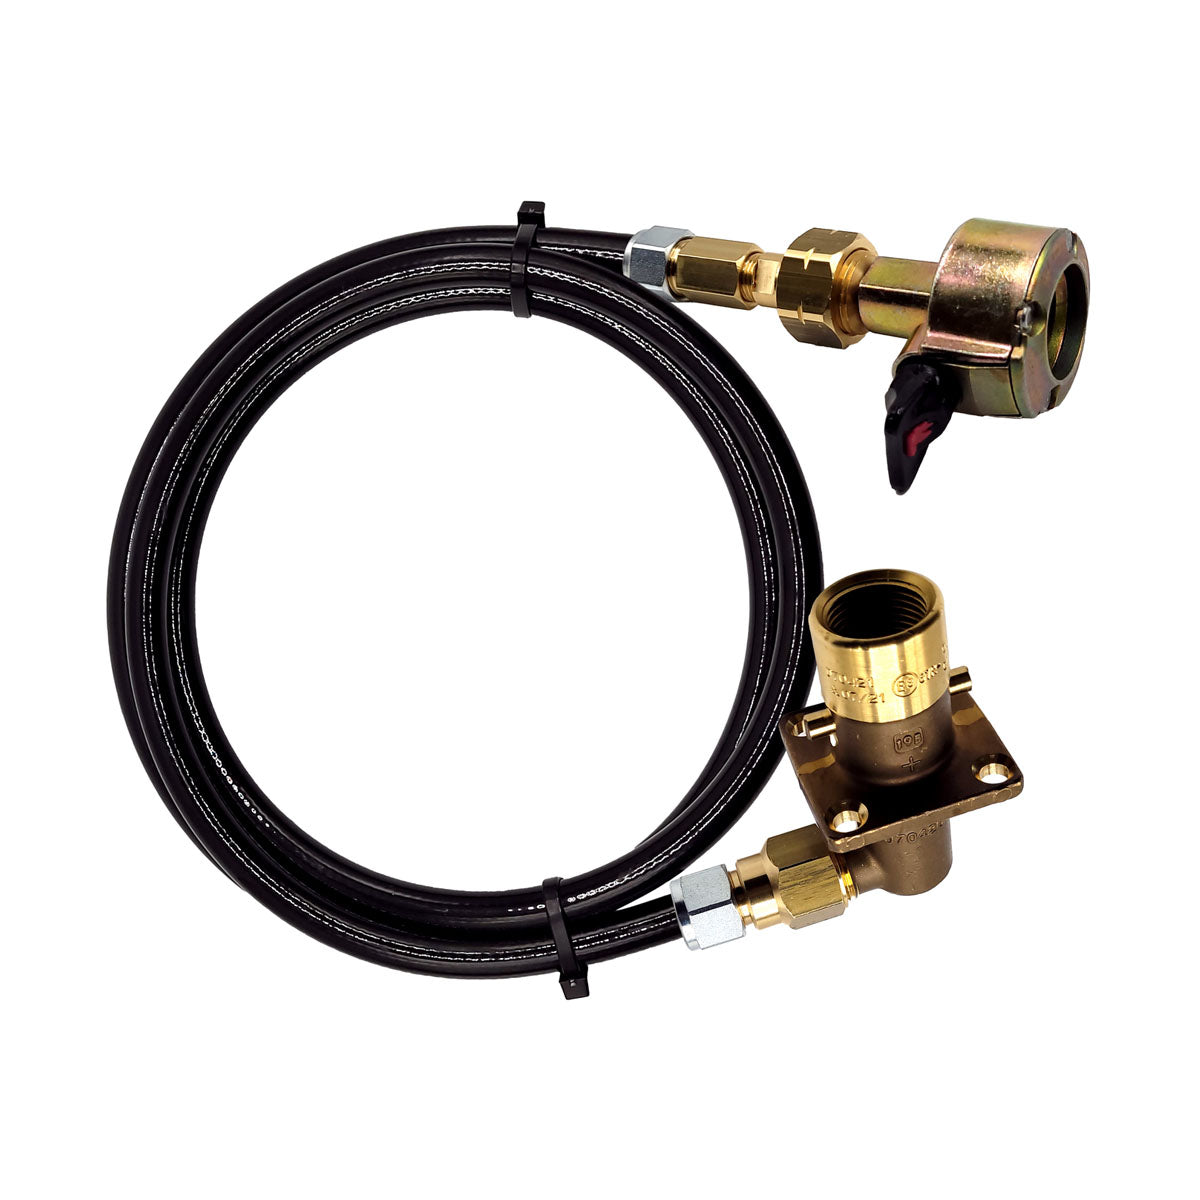 Gas regulator adapter clip-on 21 mm, Gas Filling Kit